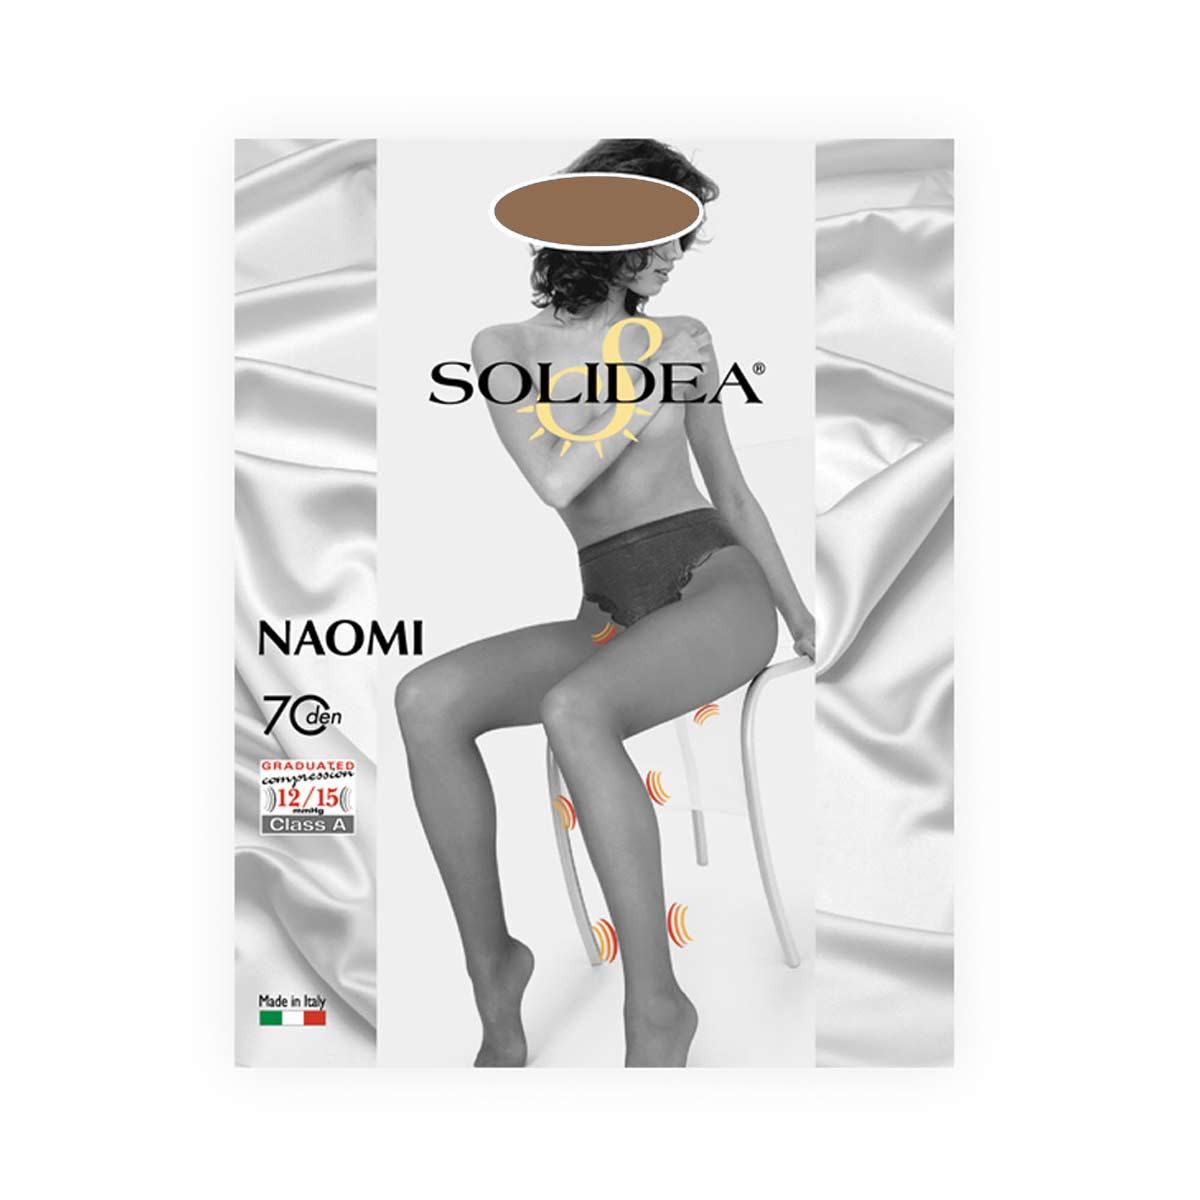 906011907 - Solidea Naomi 70 Collant Contenitivo Cammello taglia 2 - 4705895_2.jpg